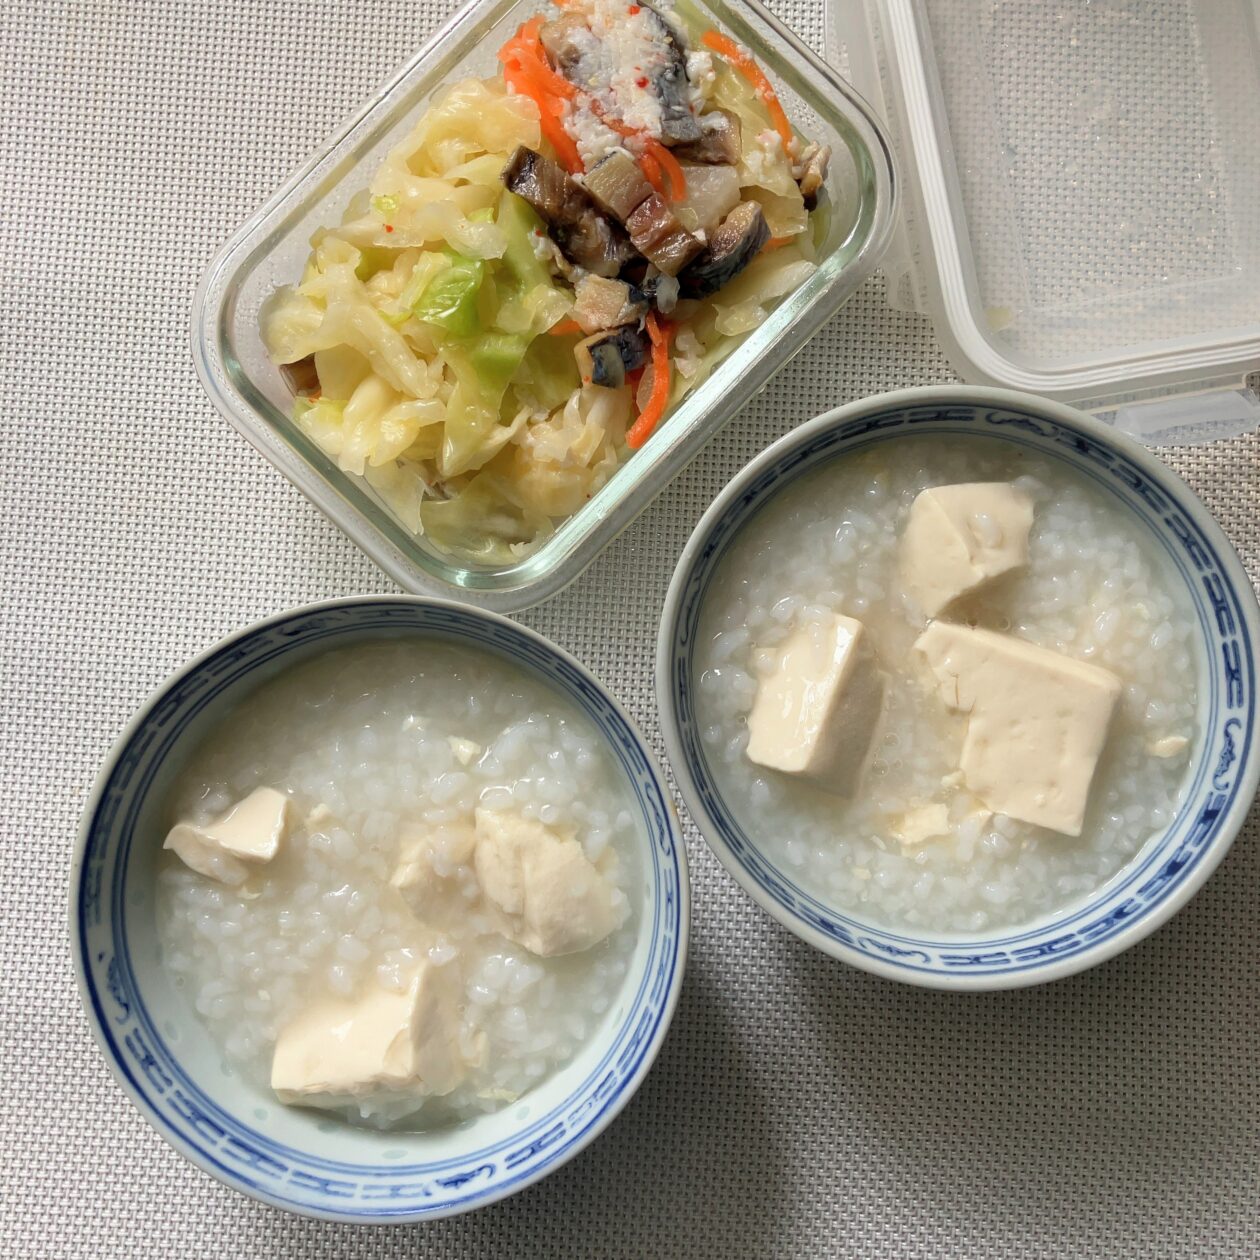 にしん漬けのせ豆腐粥をもりつけている写真